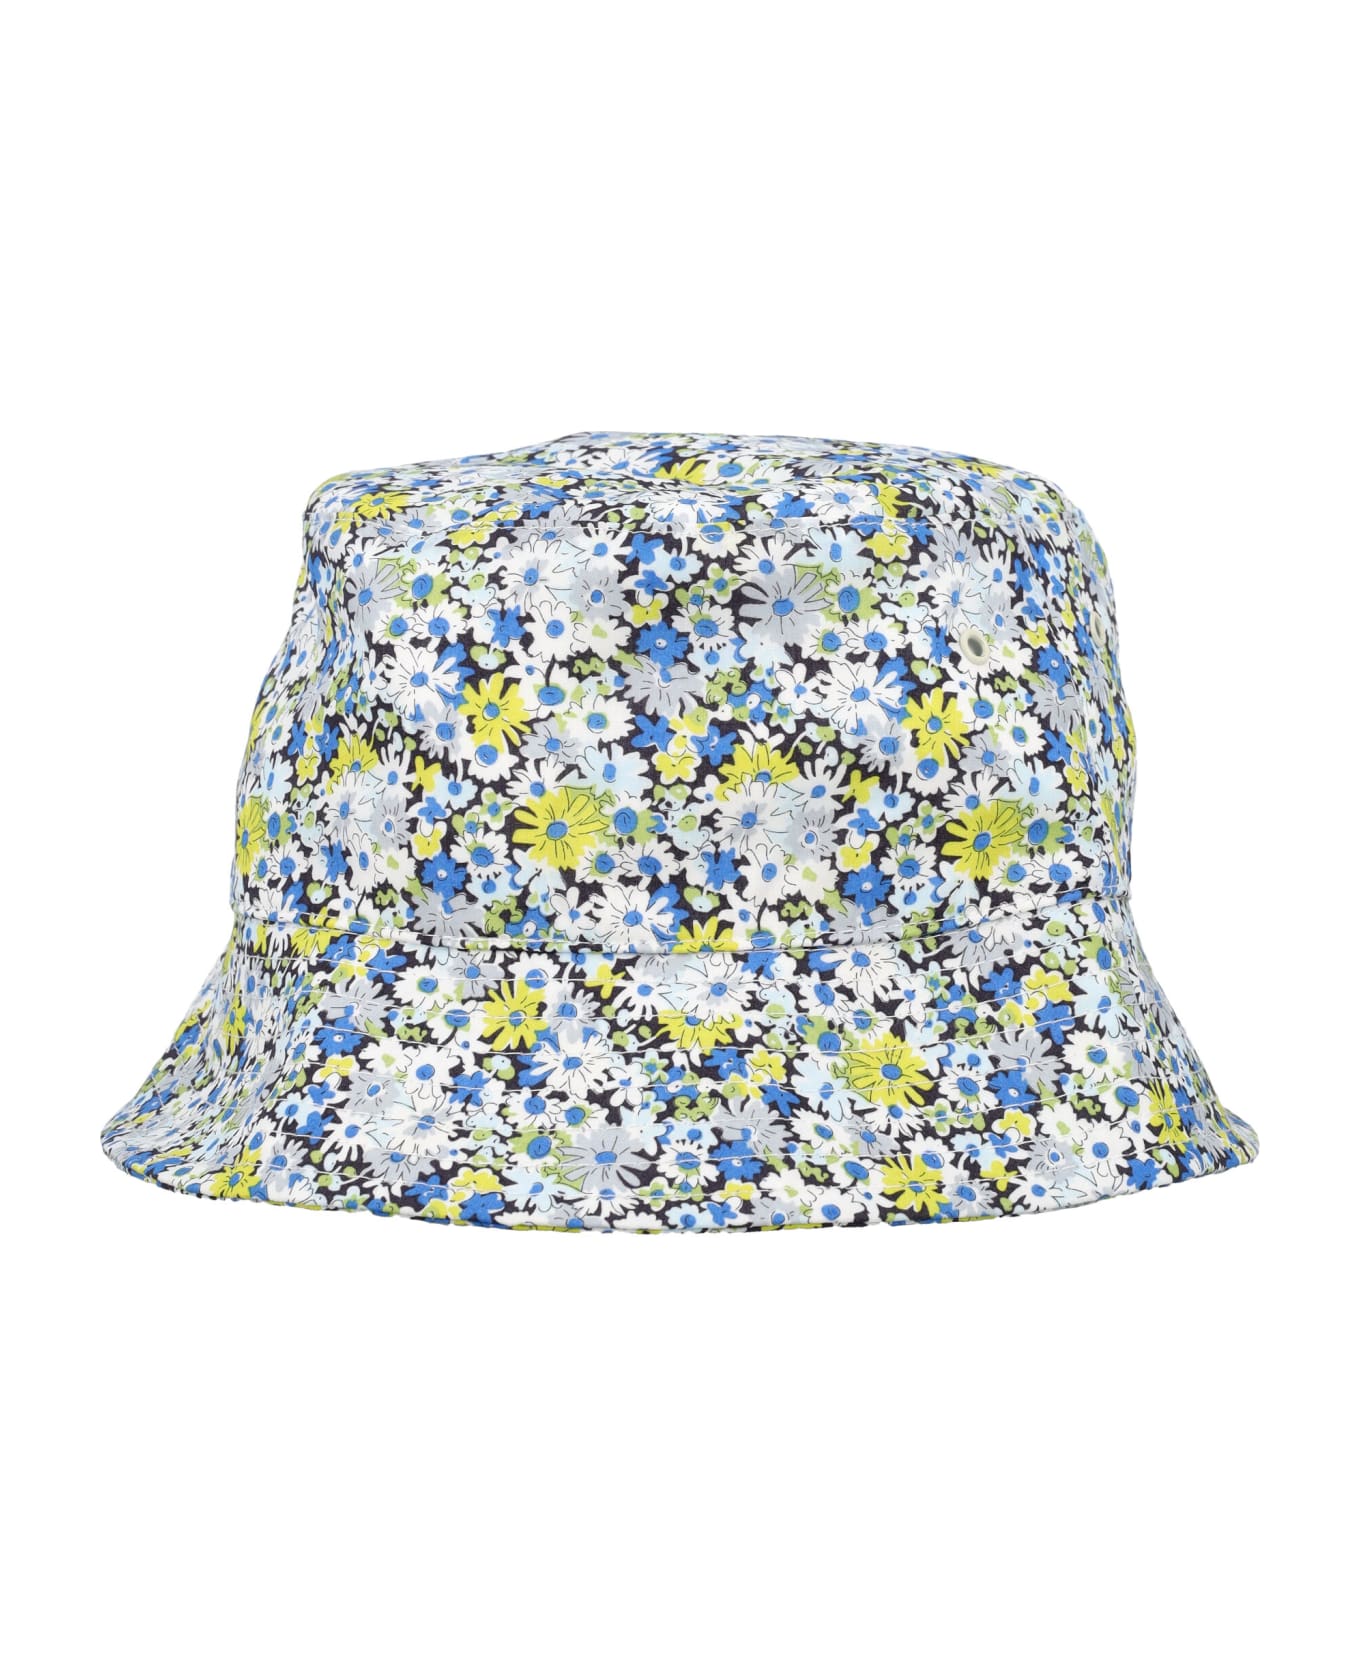 Bonpoint Theana Bucket Hat - FLOWERS BLEU